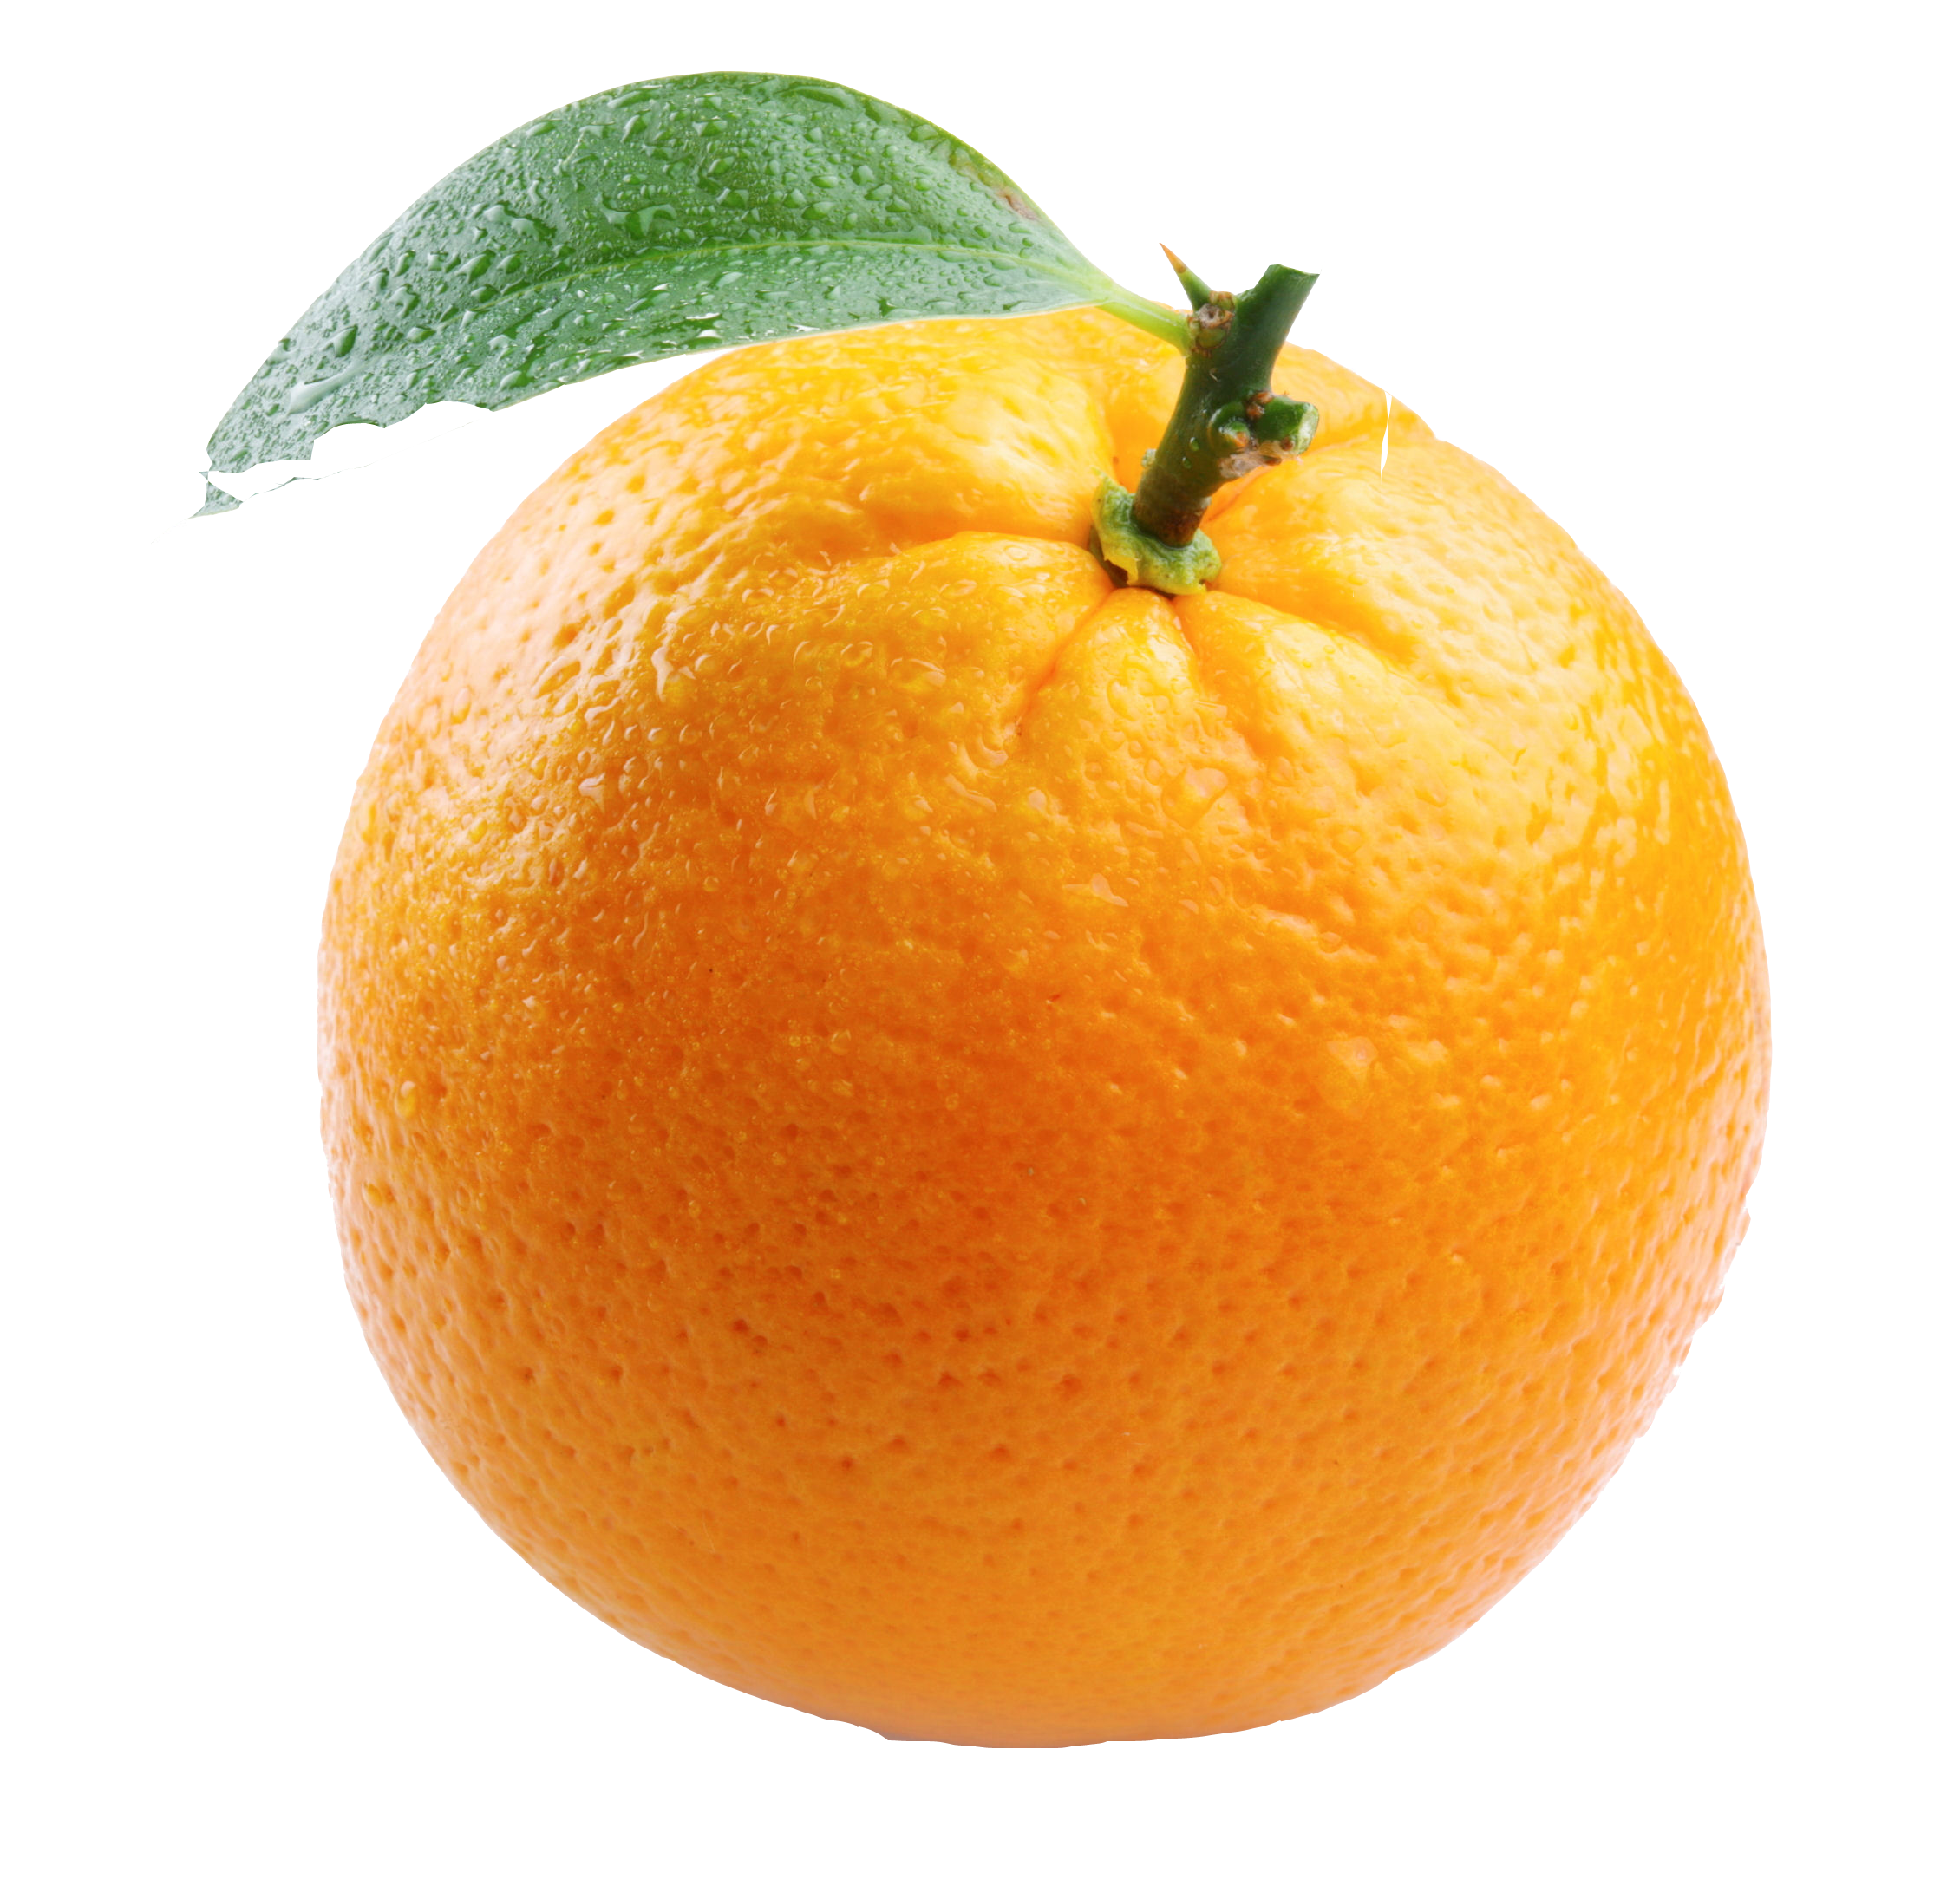 Với hình ảnh Orange PNG, bạn có thể tận dụng đầy đủ mọi chi tiết đẹp nhất của quả cam mà không cần phải loại bỏ nền hoặc thực hiện bất kỳ thay đổi nào. Trong khi đó, bạn vẫn có thể sử dụng nó độc lập hoặc kết hợp với những tài nguyên khác để tạo ra những trang trí độc đáo.